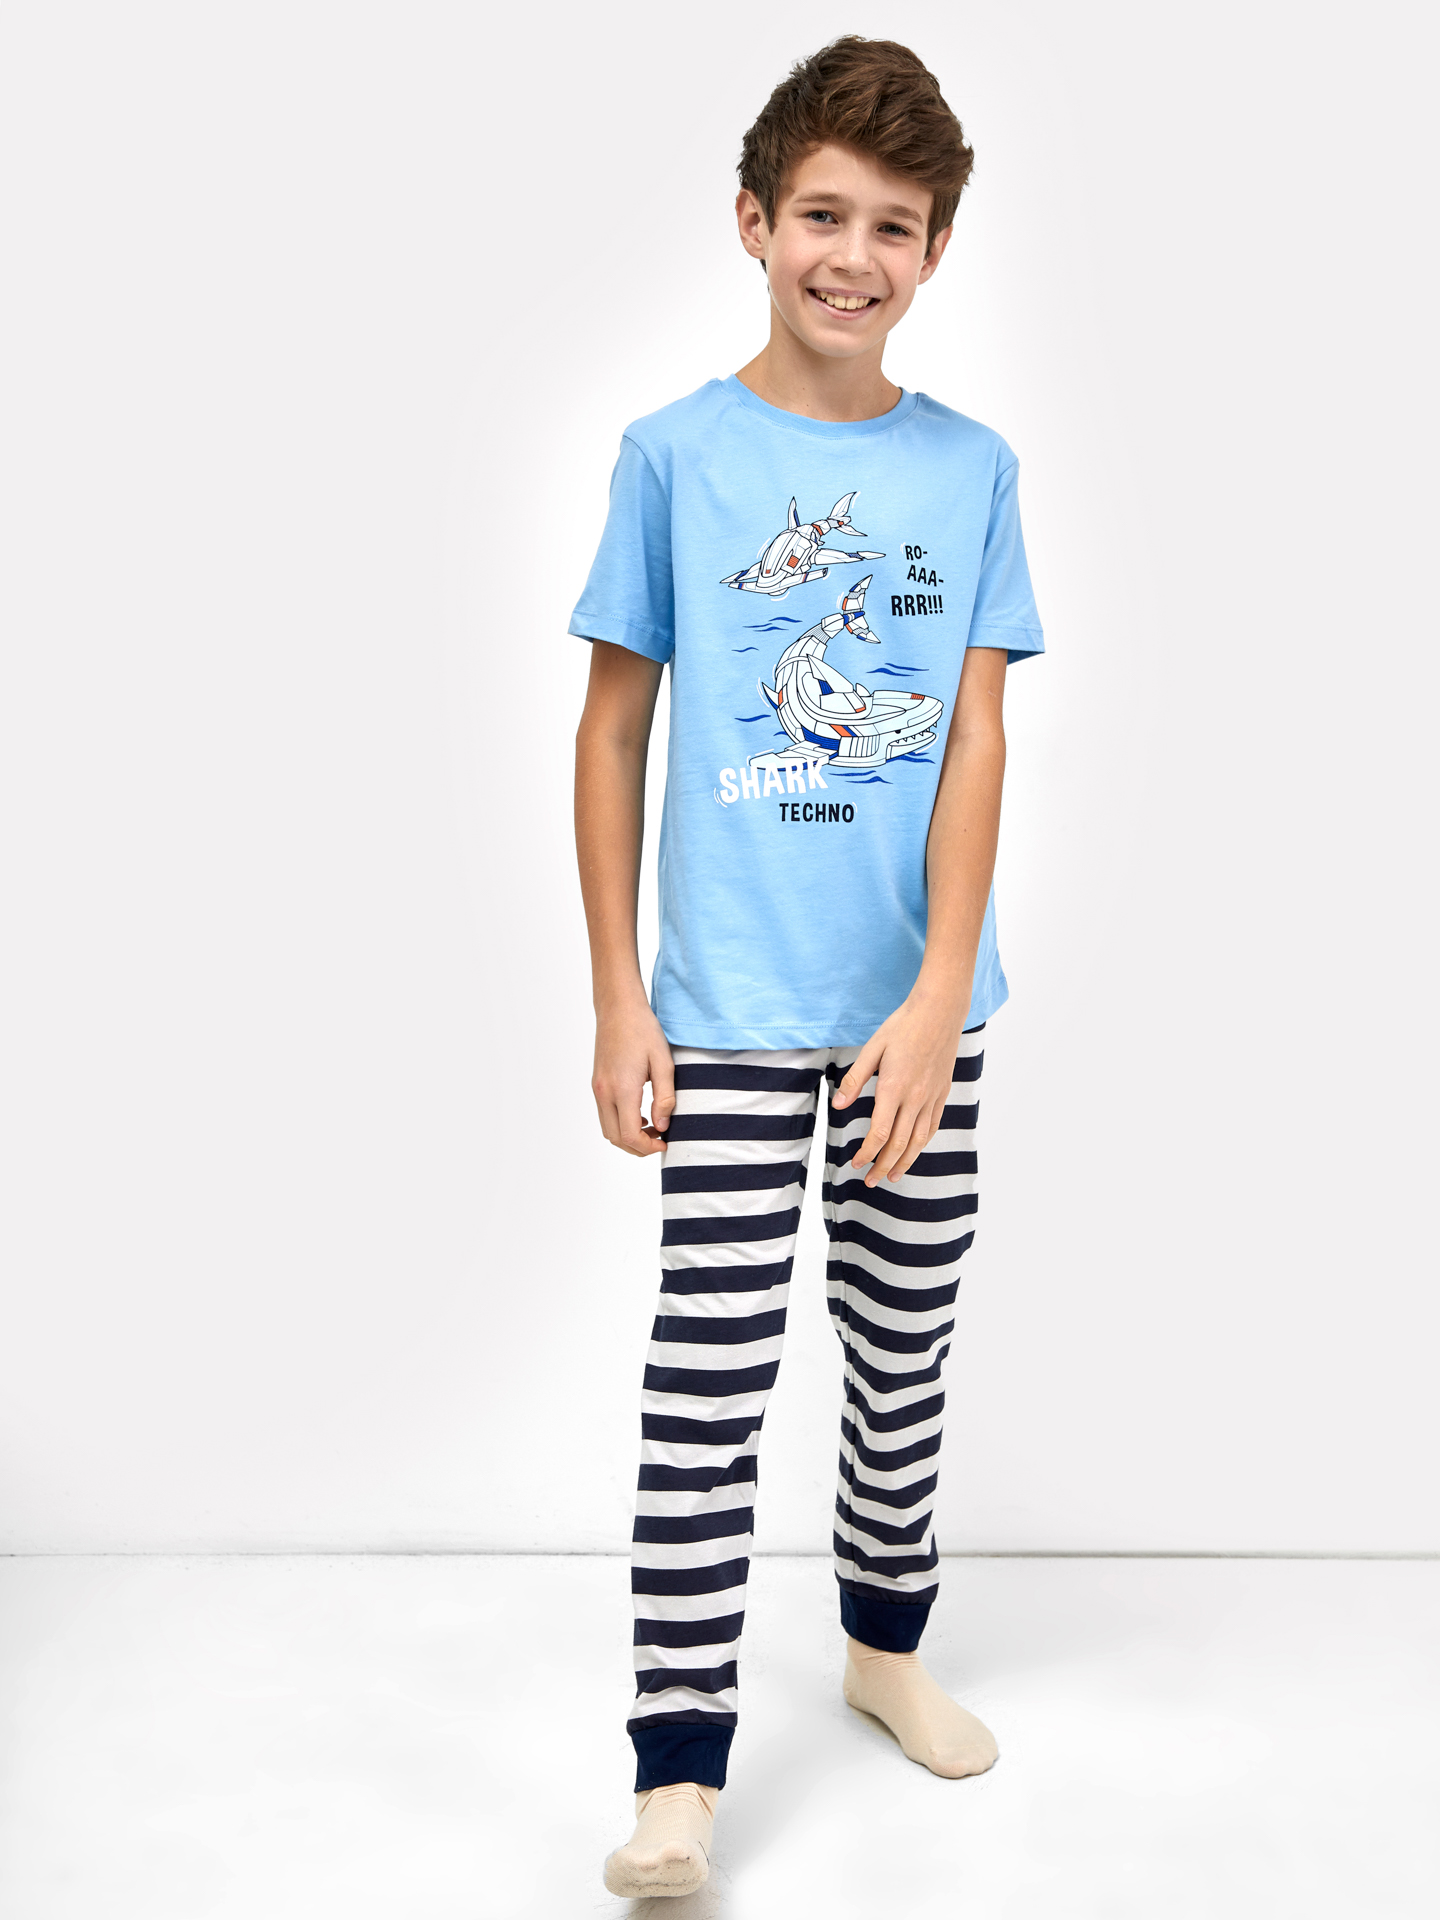 Хлопковый комплект для мальчиков (голубая футболка и брюки в серо-синюю полоску)